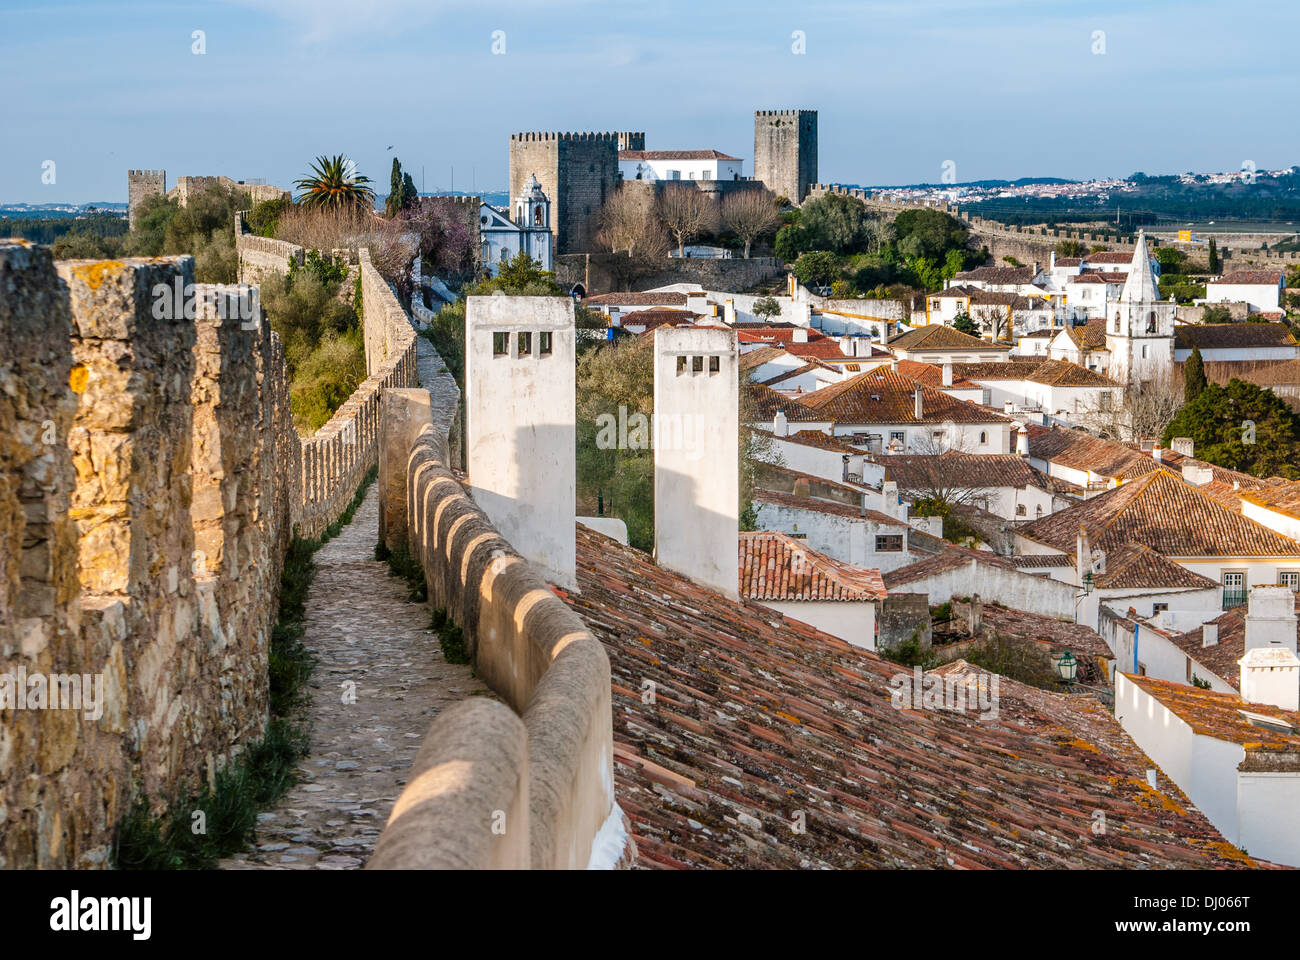 Obidos - vecchia città fortificata in Portogallo. Il nome di Obidos deriva probabilmente dal termine latino oppidum, significato cittadella, Foto Stock